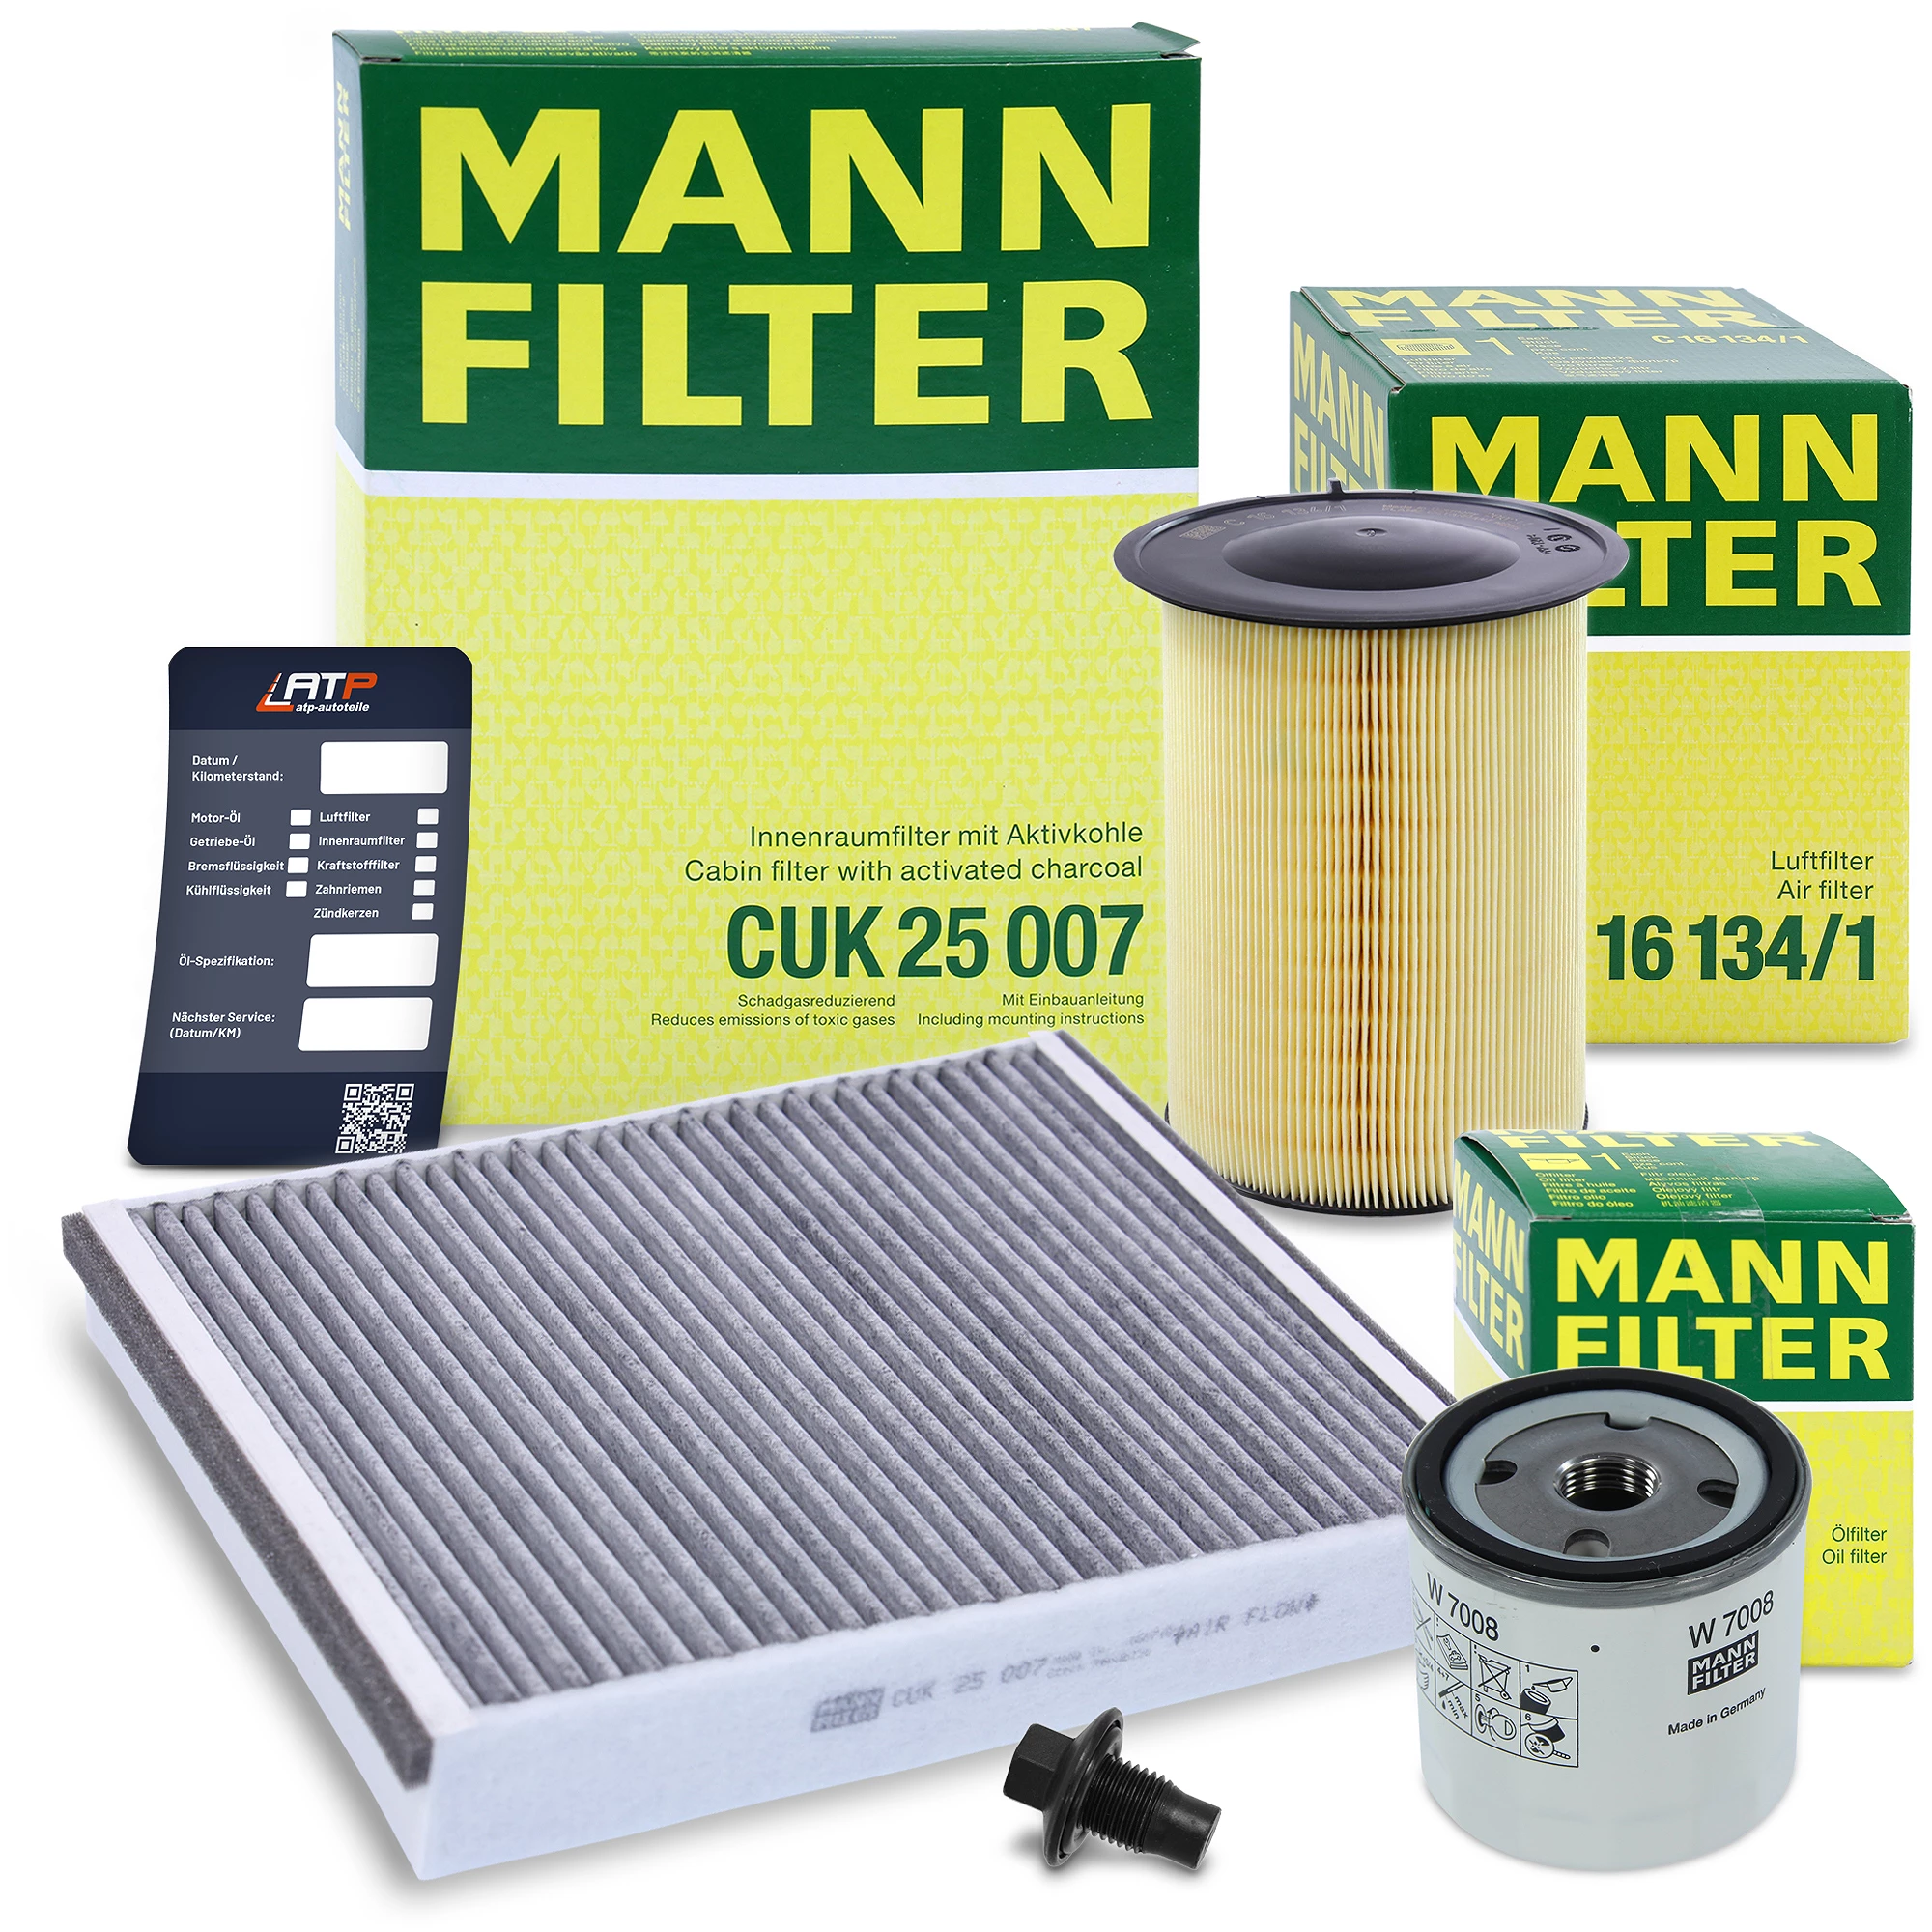 MANN-FILTER Inspektionspaket Filtersatz SET A 10491895 günstig online kaufen